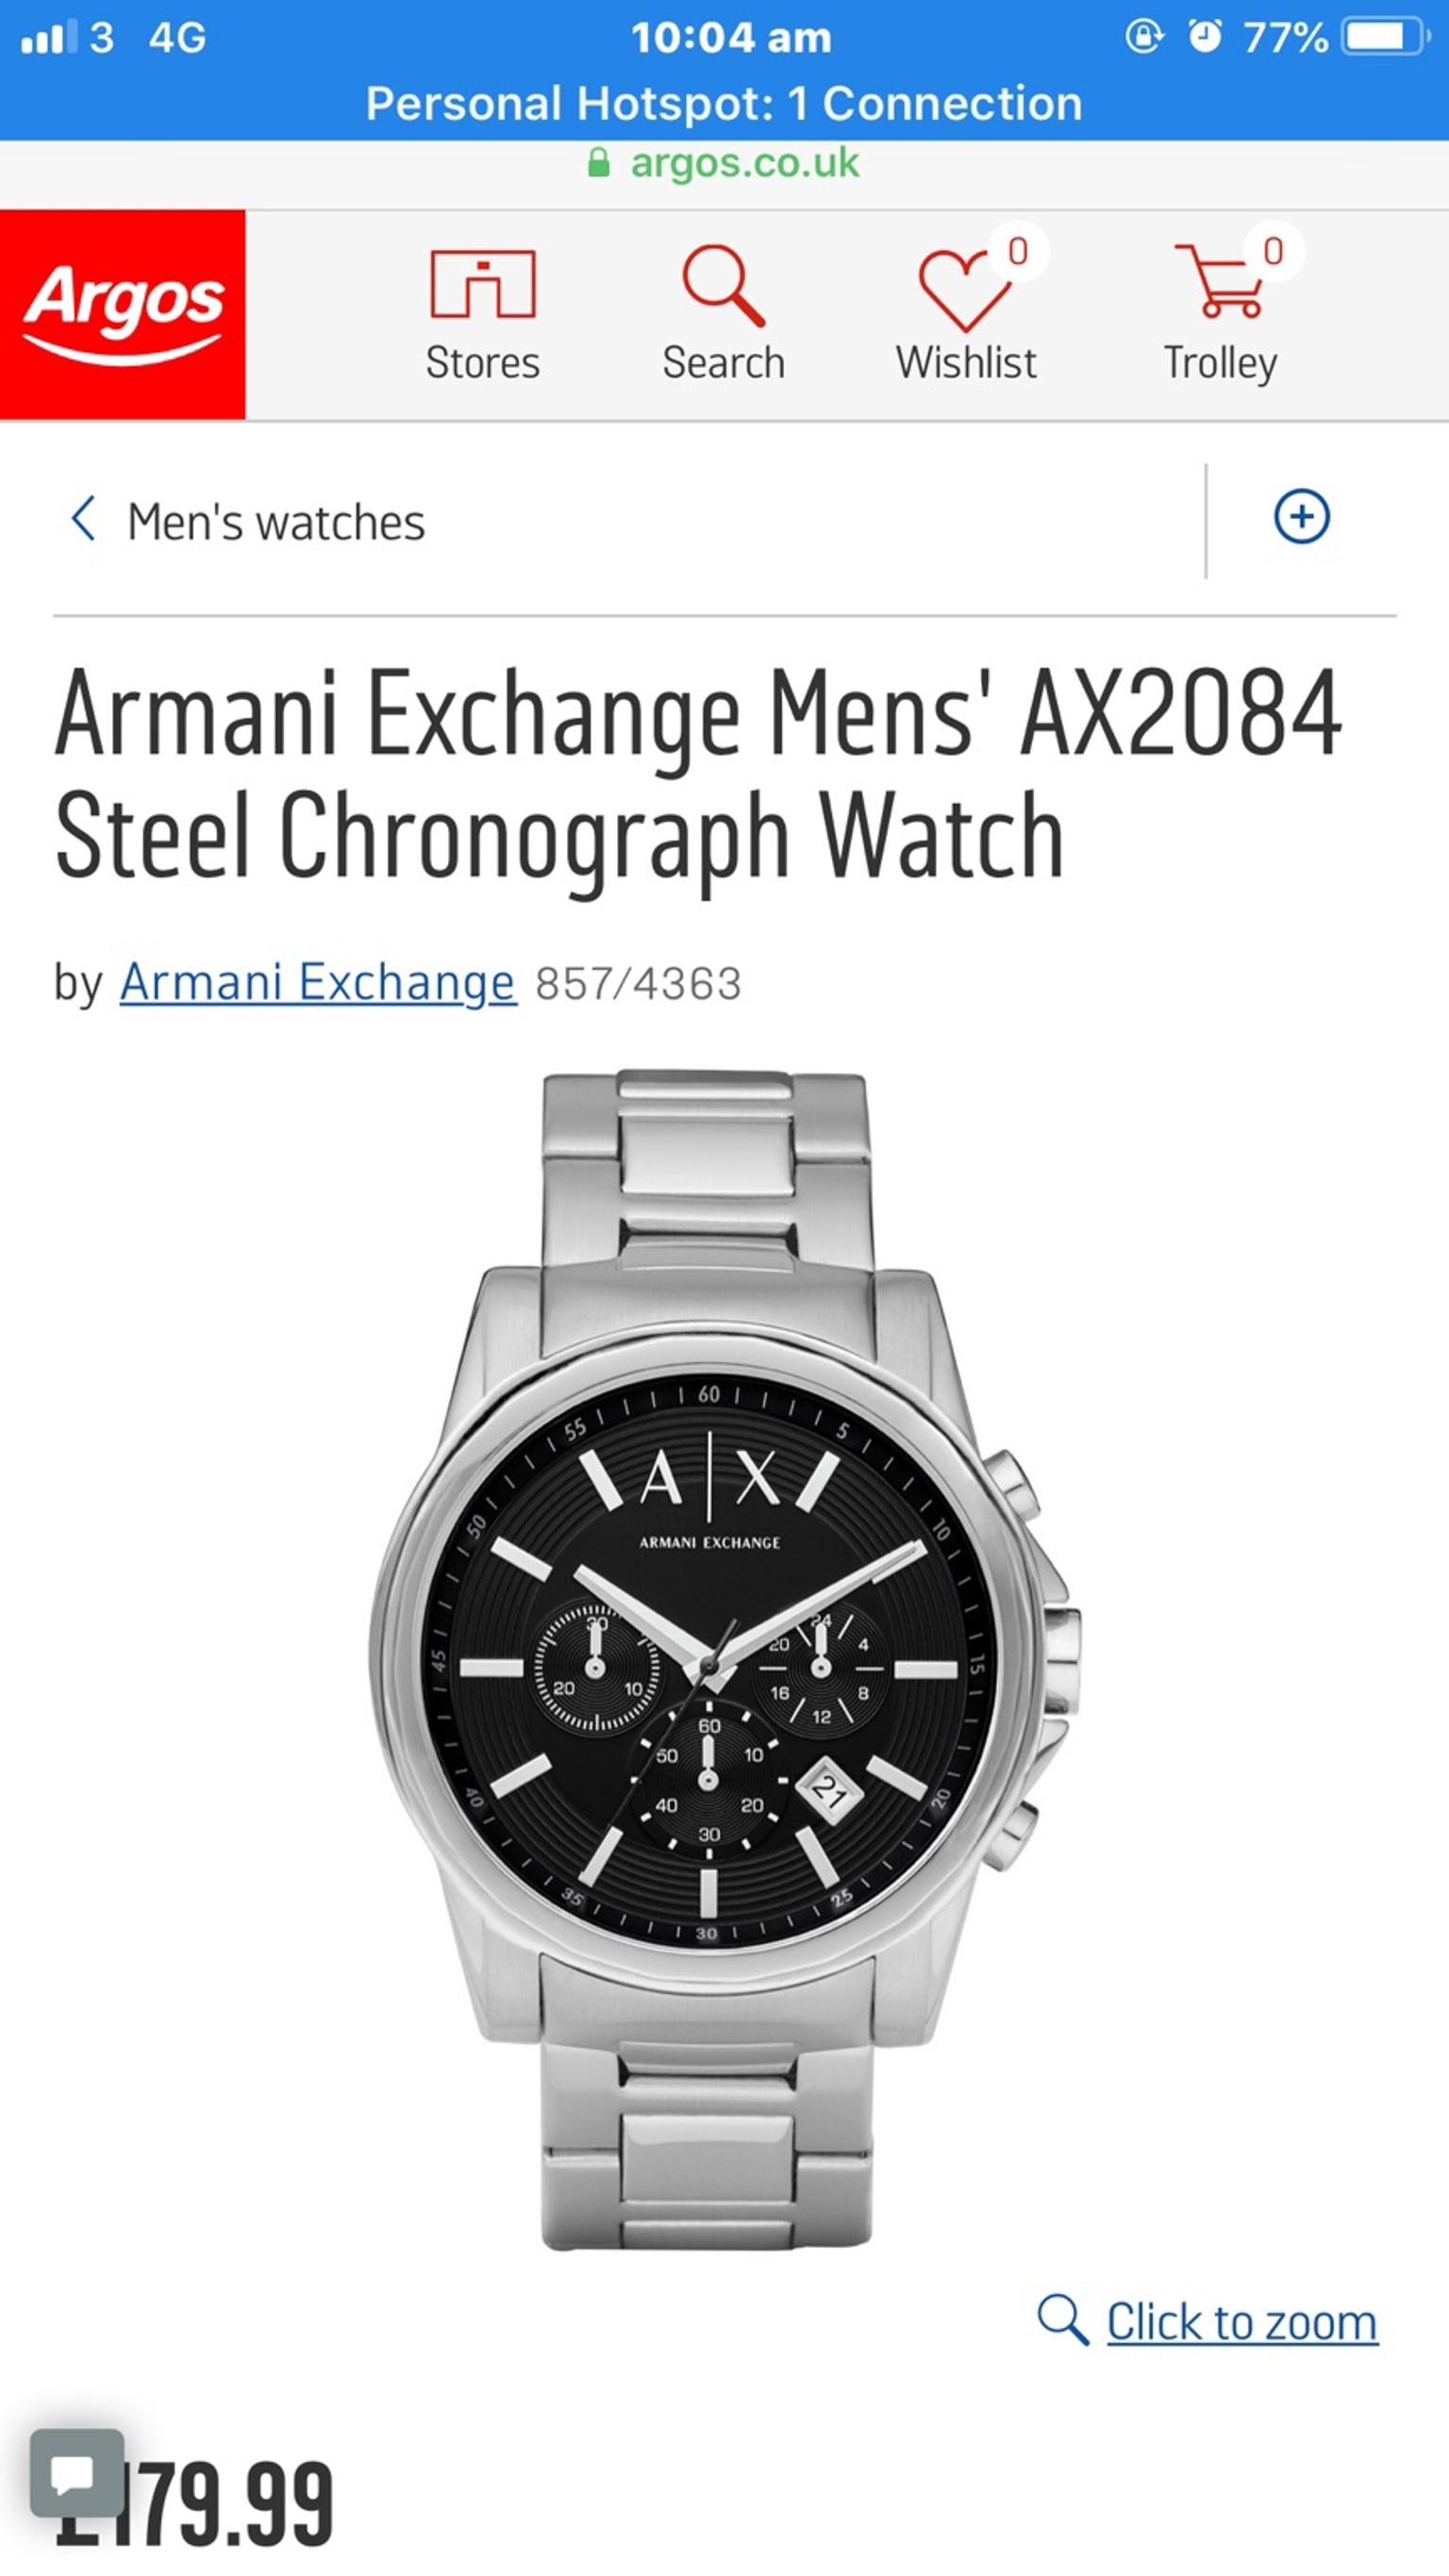 armani exchange watches quora